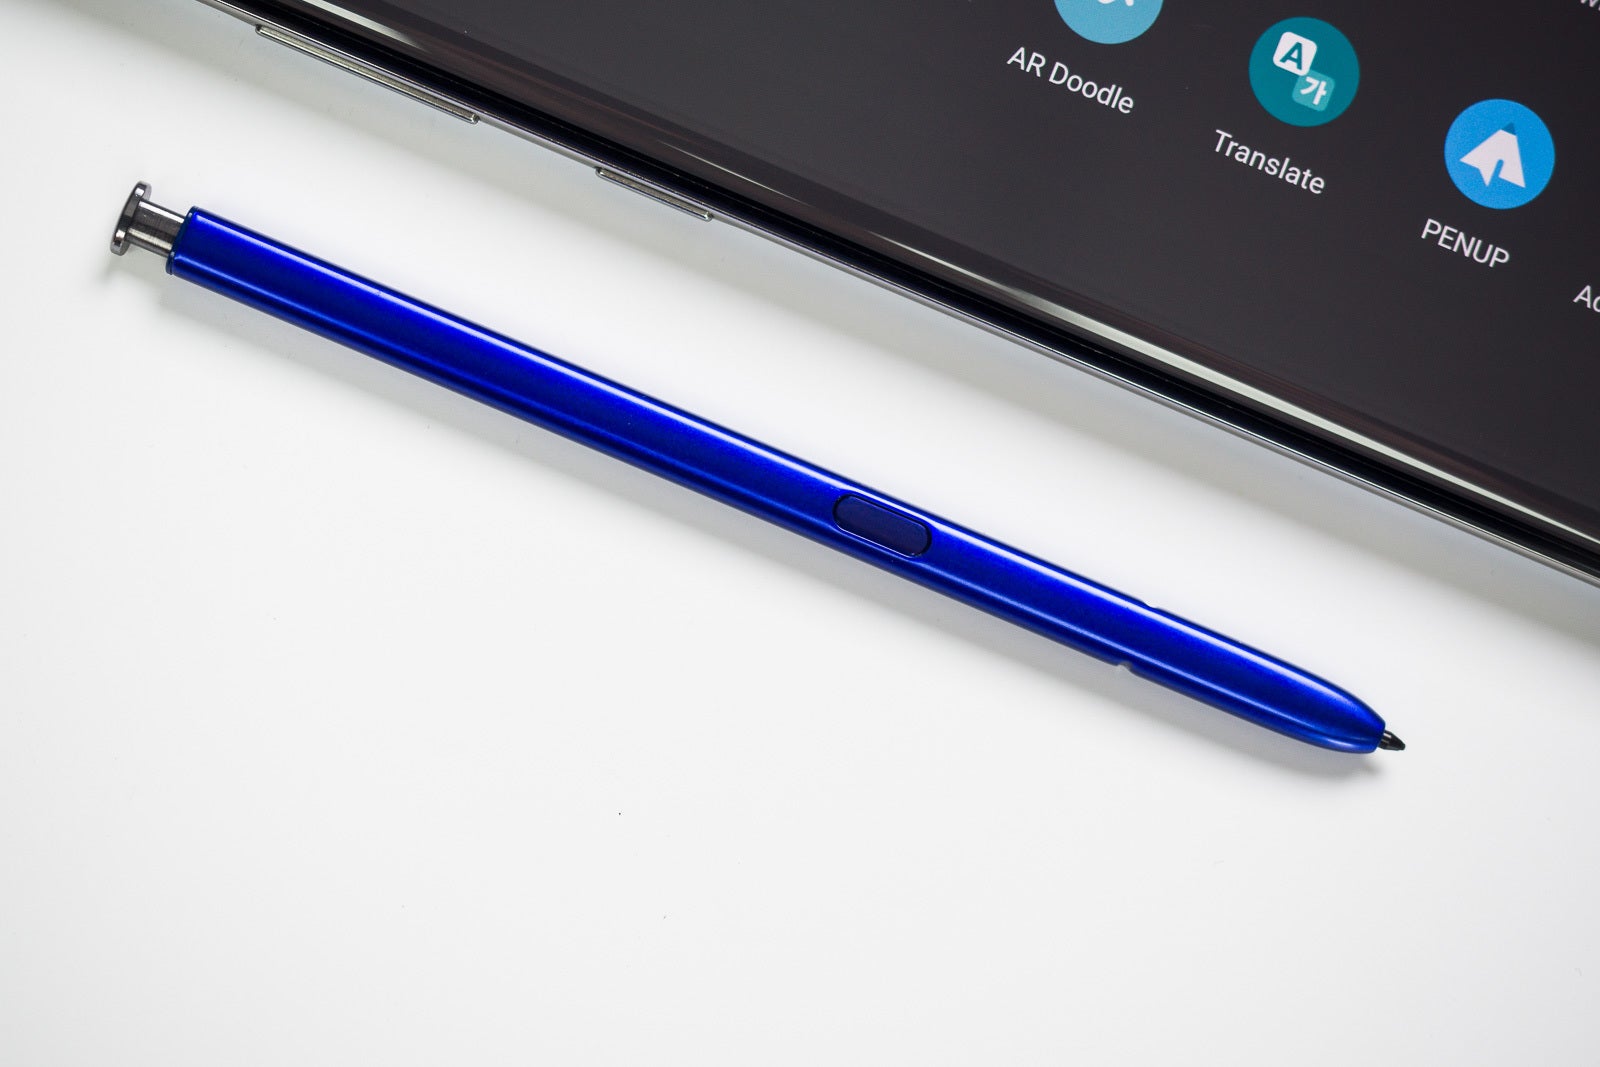 Pen note. Стилус самсунг Note 10 Lite. S Pen для Samsung Note 10 Lite. Стилус Samsung Galaxy Note 10 Plus. Стилус Samsung s Pen Note 10.